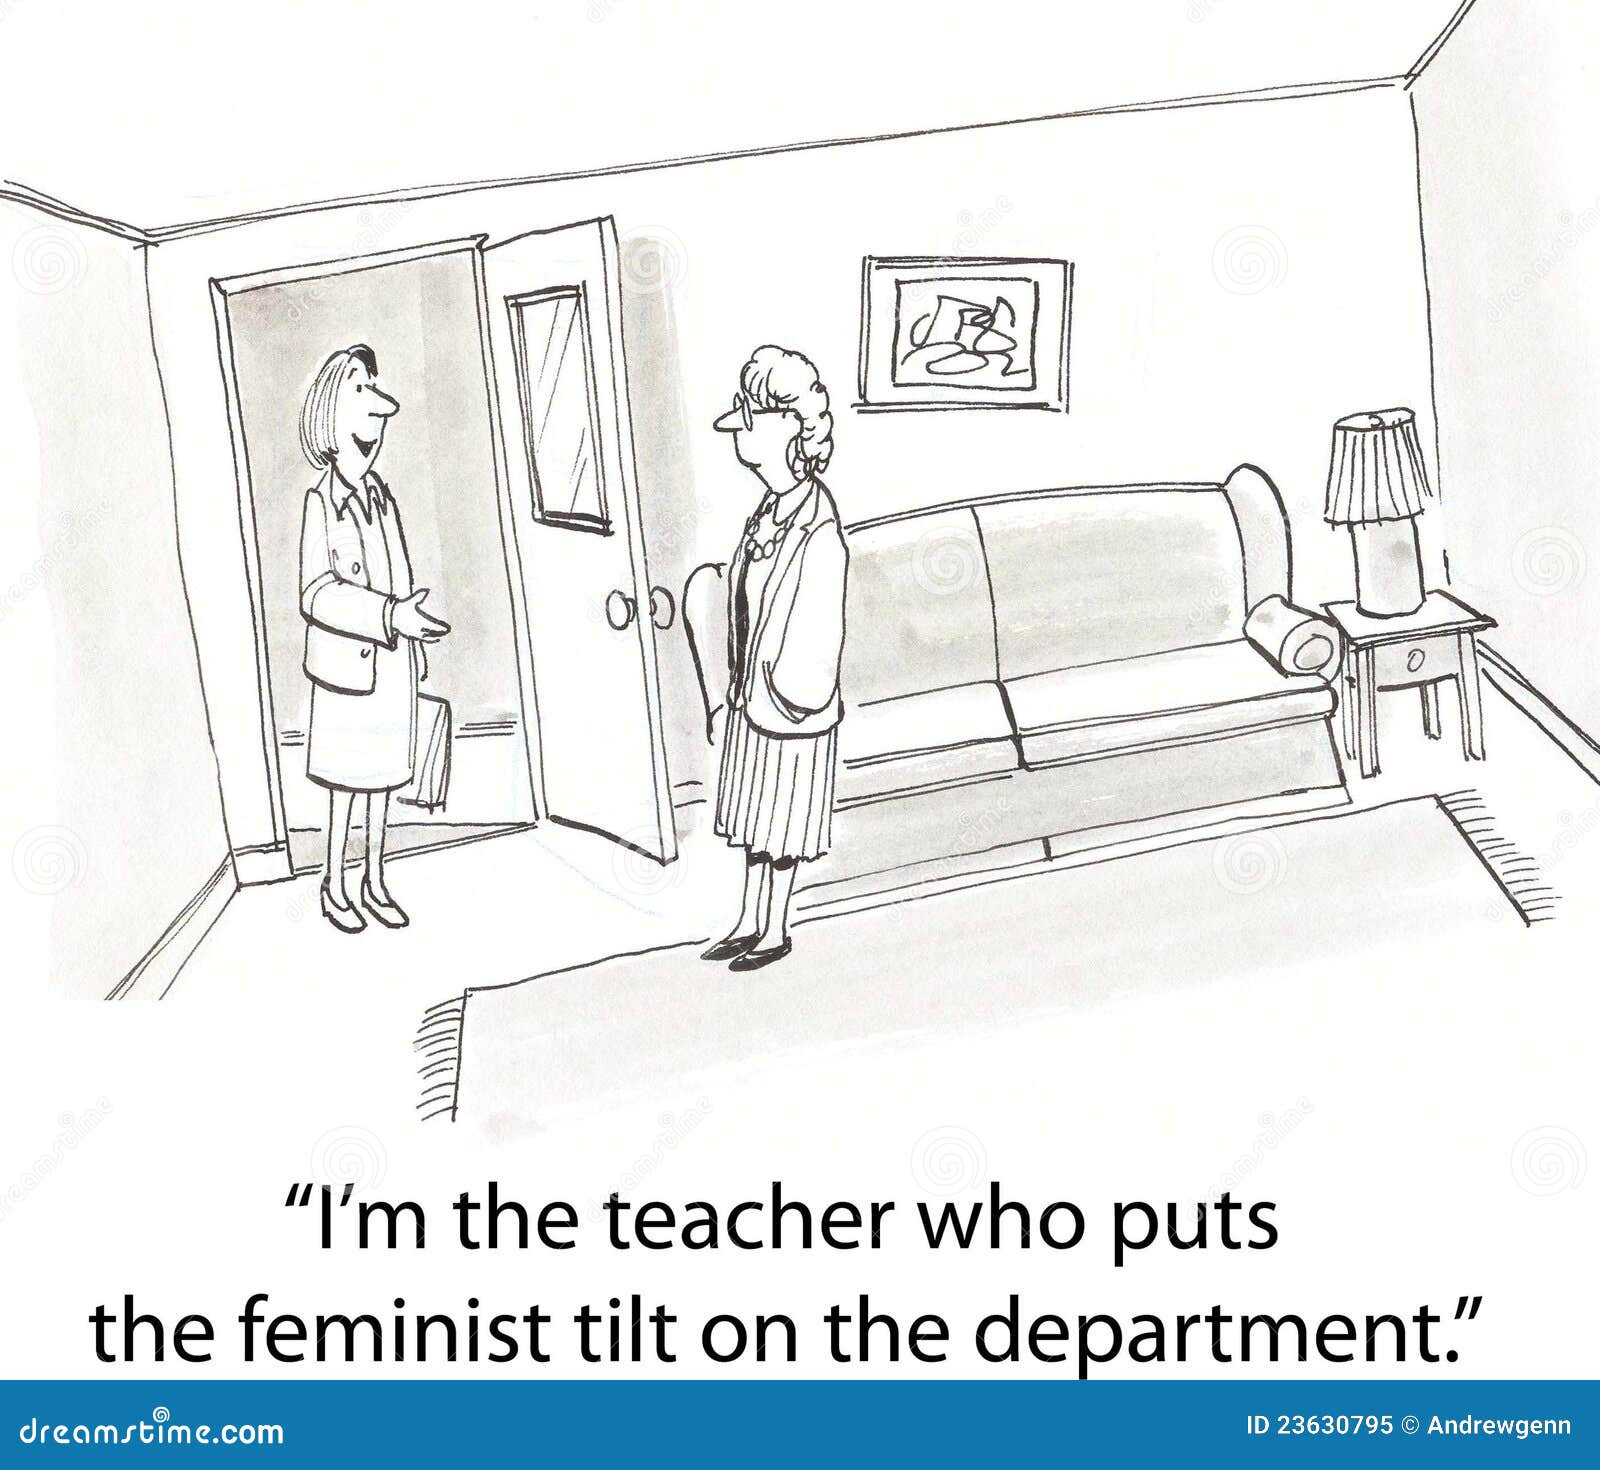 feminist tilt